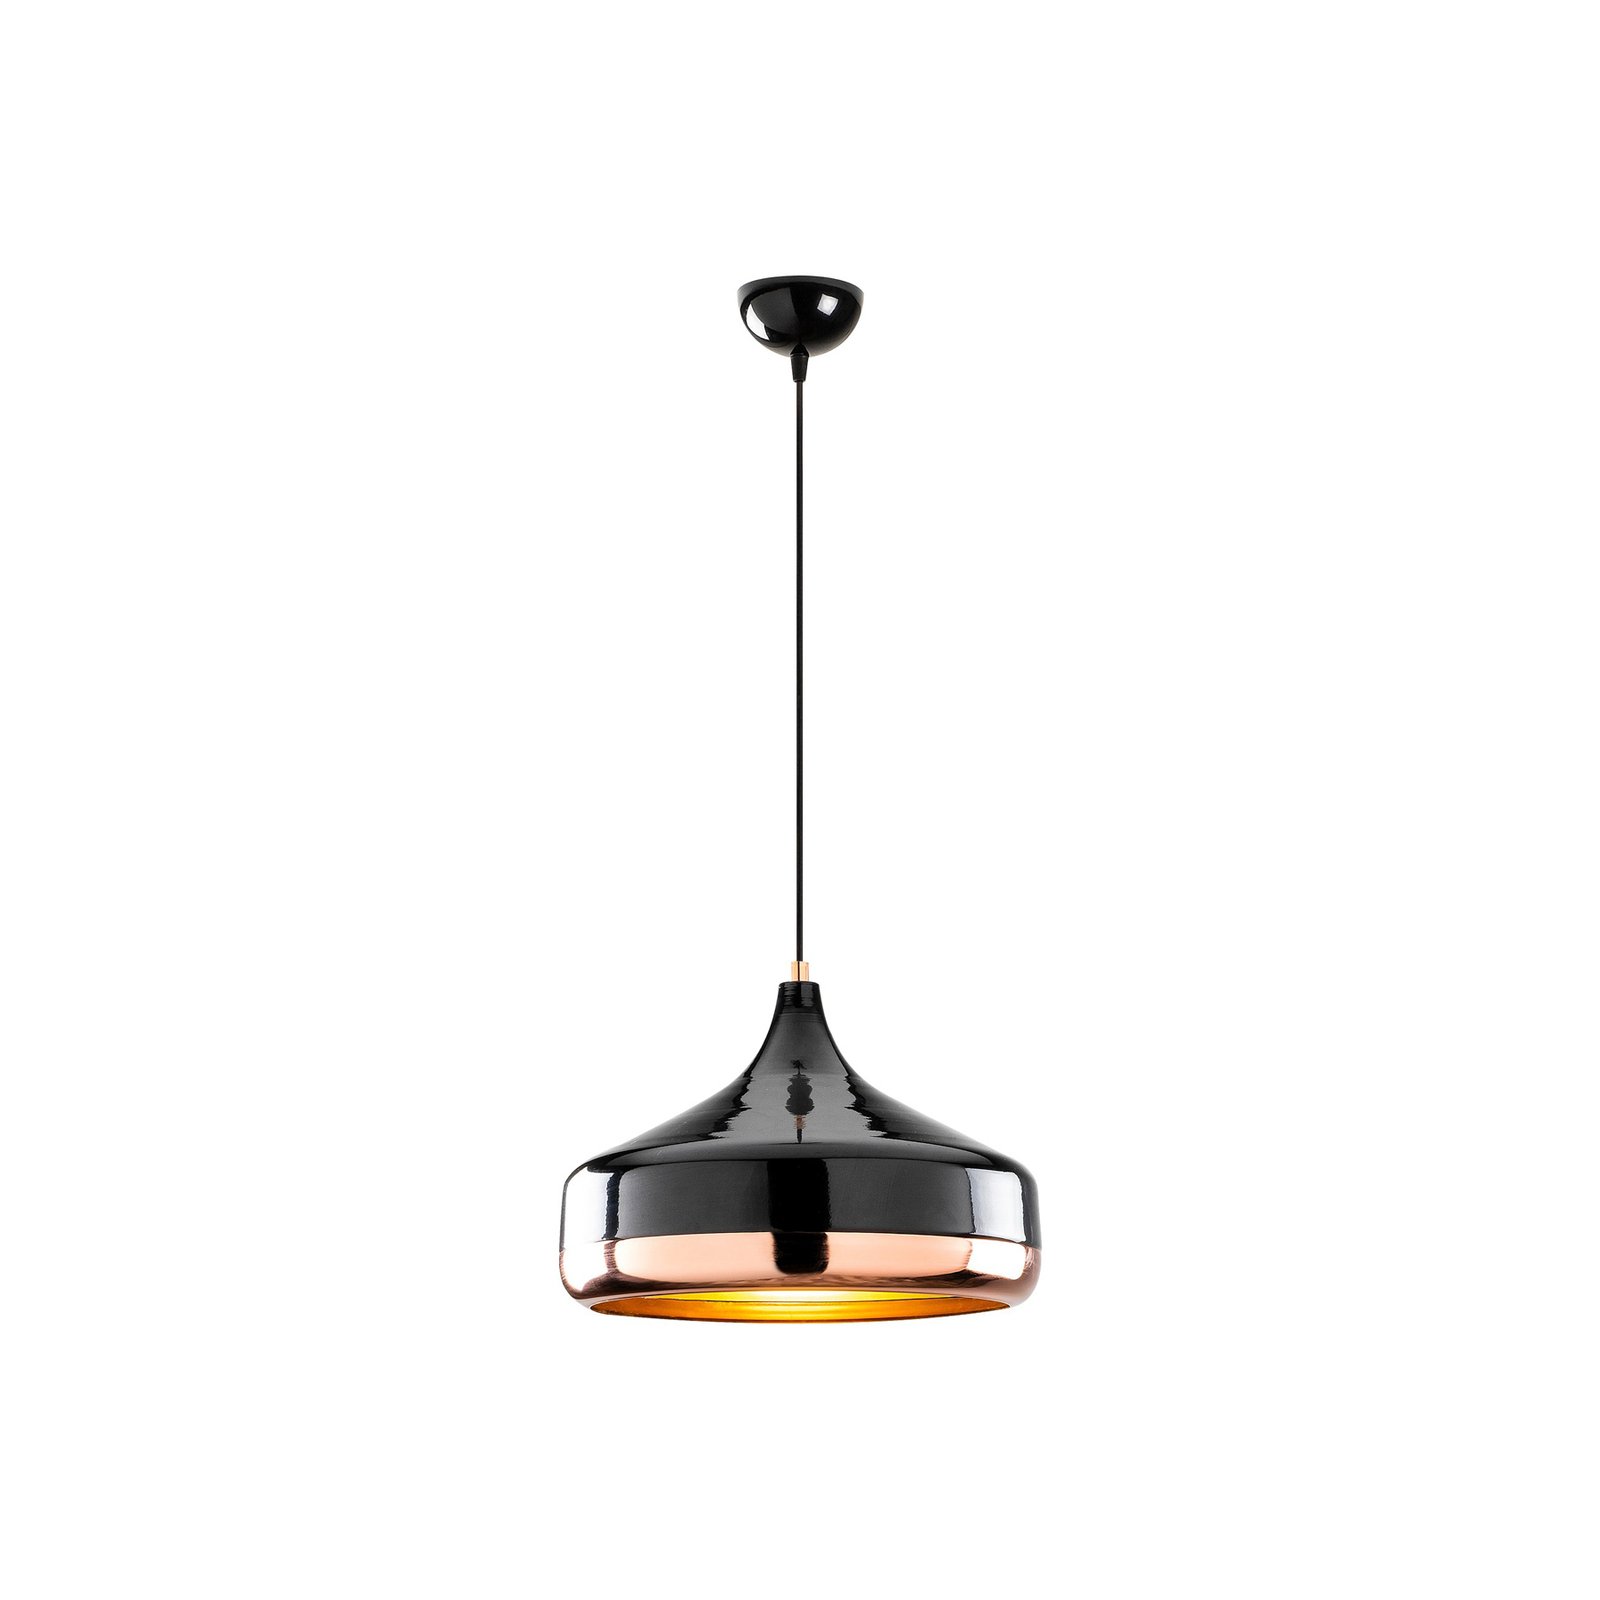 Hanglamp Yildo 253-S 1-lamp Ø36cm zwart/koper